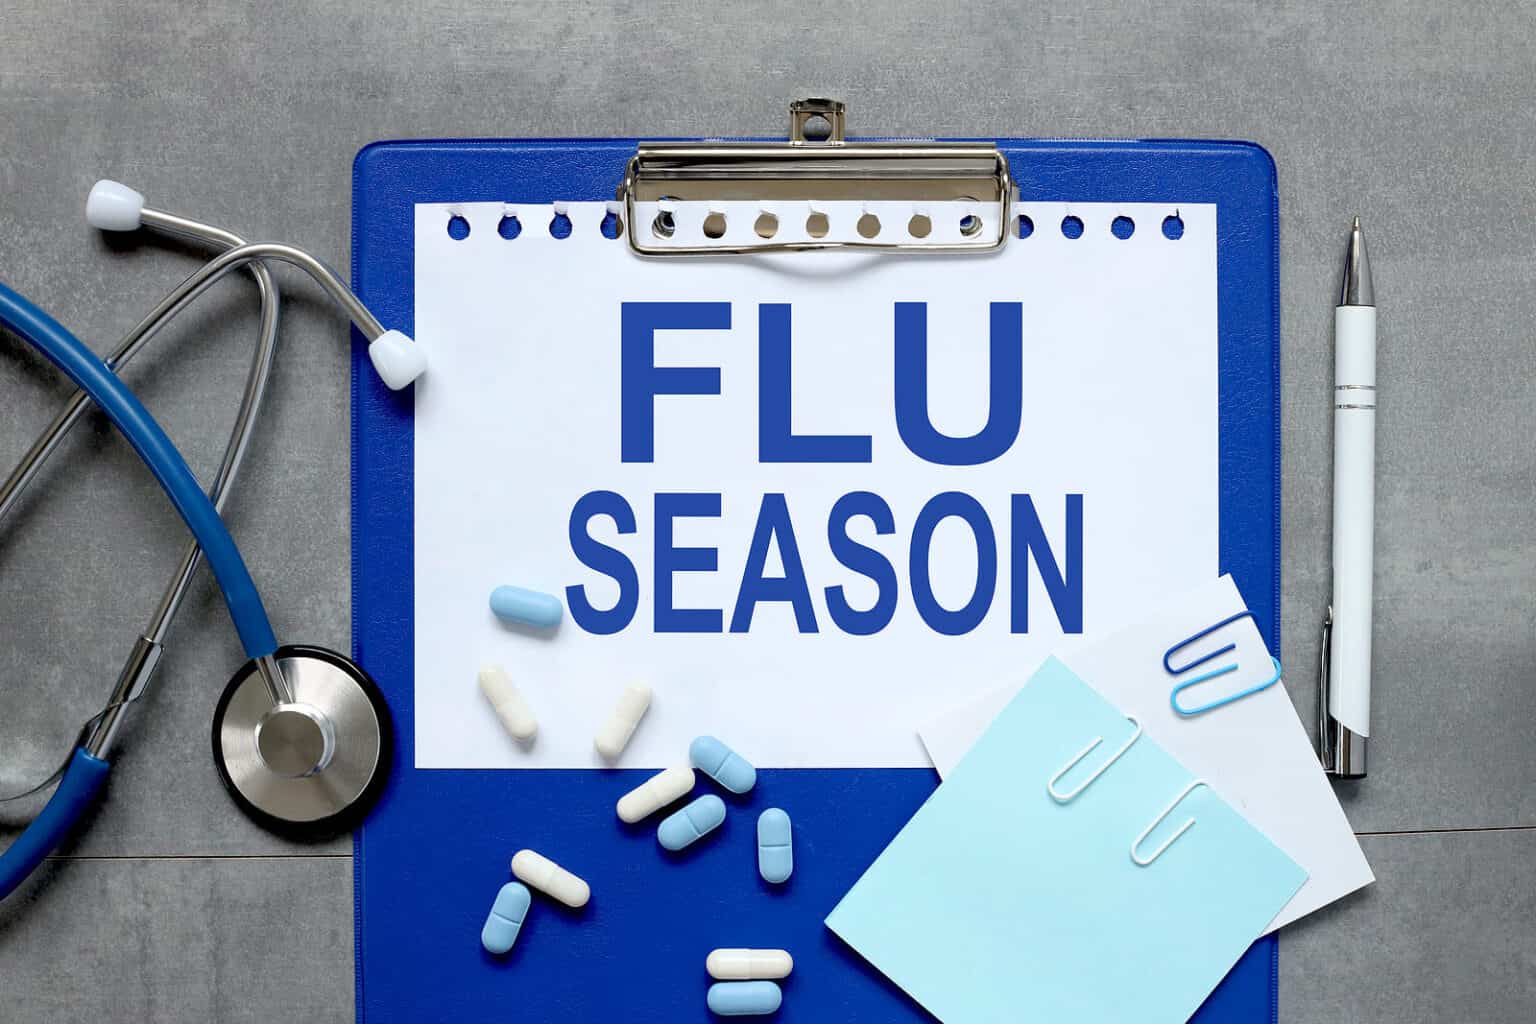 Flu Season board